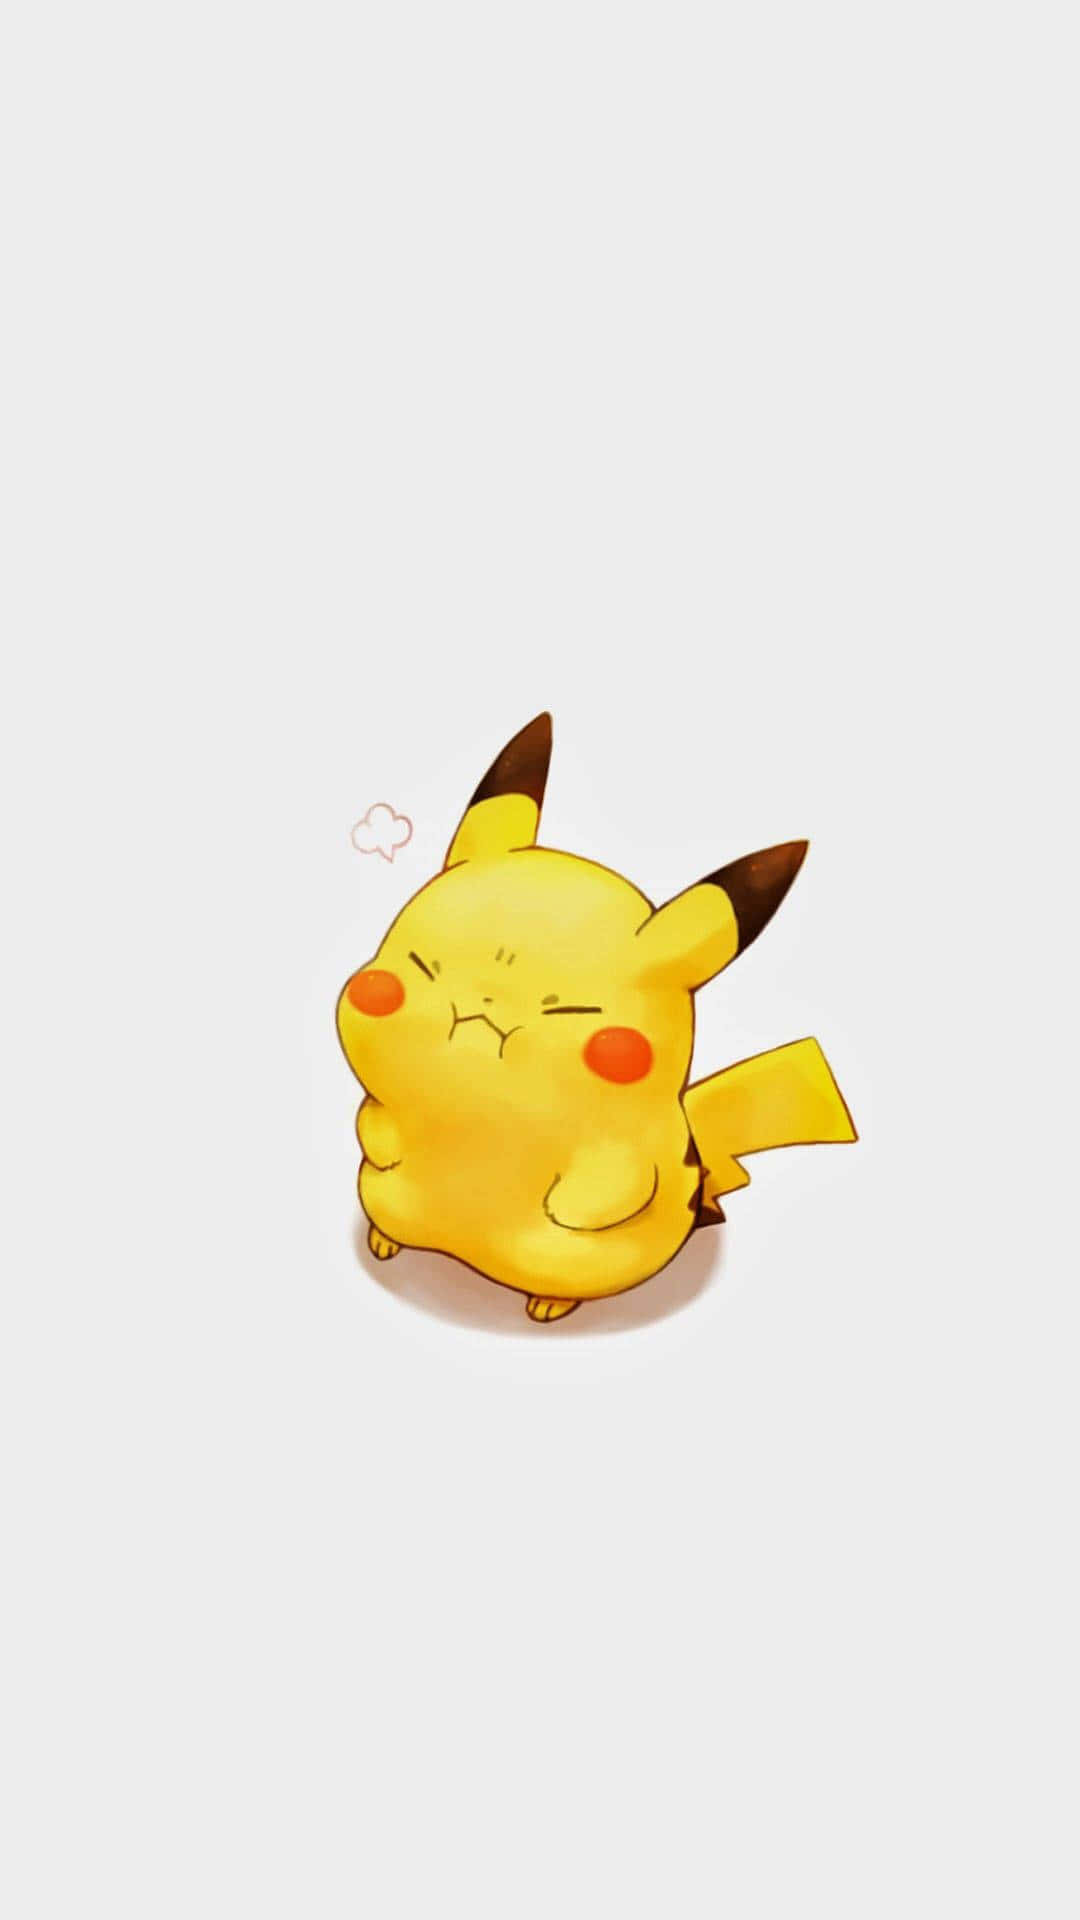 Sød og uartig, denne søde Baby Pikachu er et must have! Wallpaper